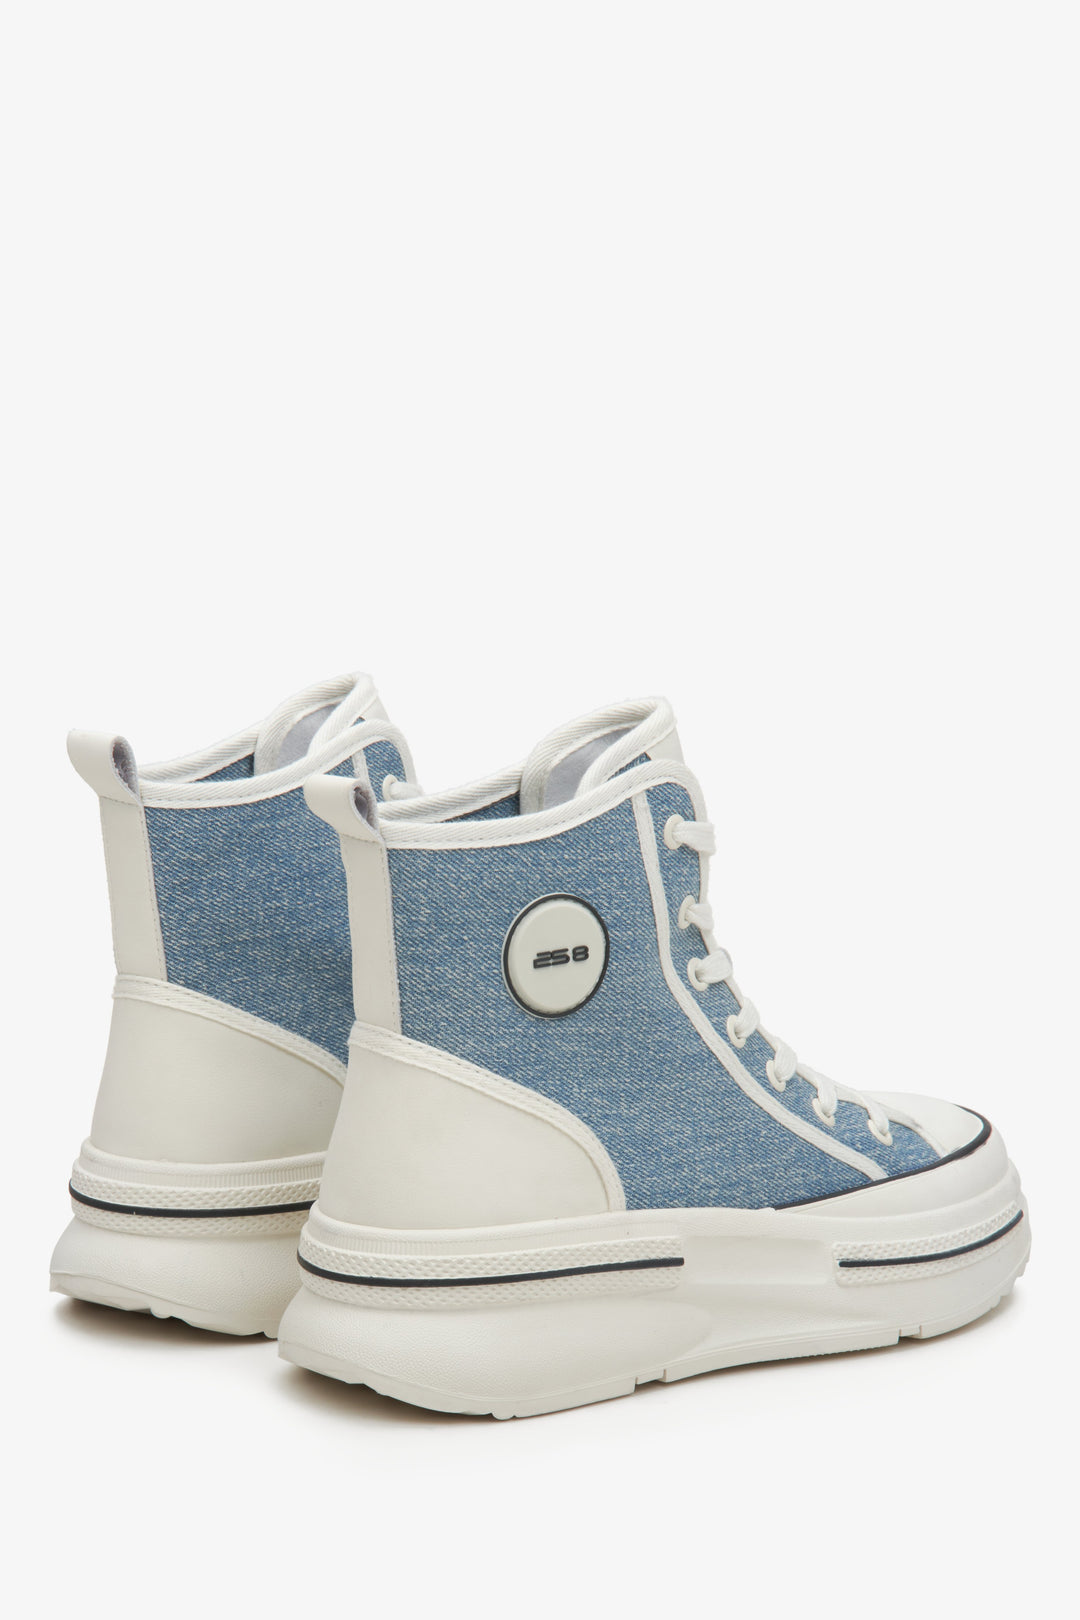 Tekstylne niebieskie wysokie trampki damskie ES8 - zbliżenie na zapiętek i bok butów.